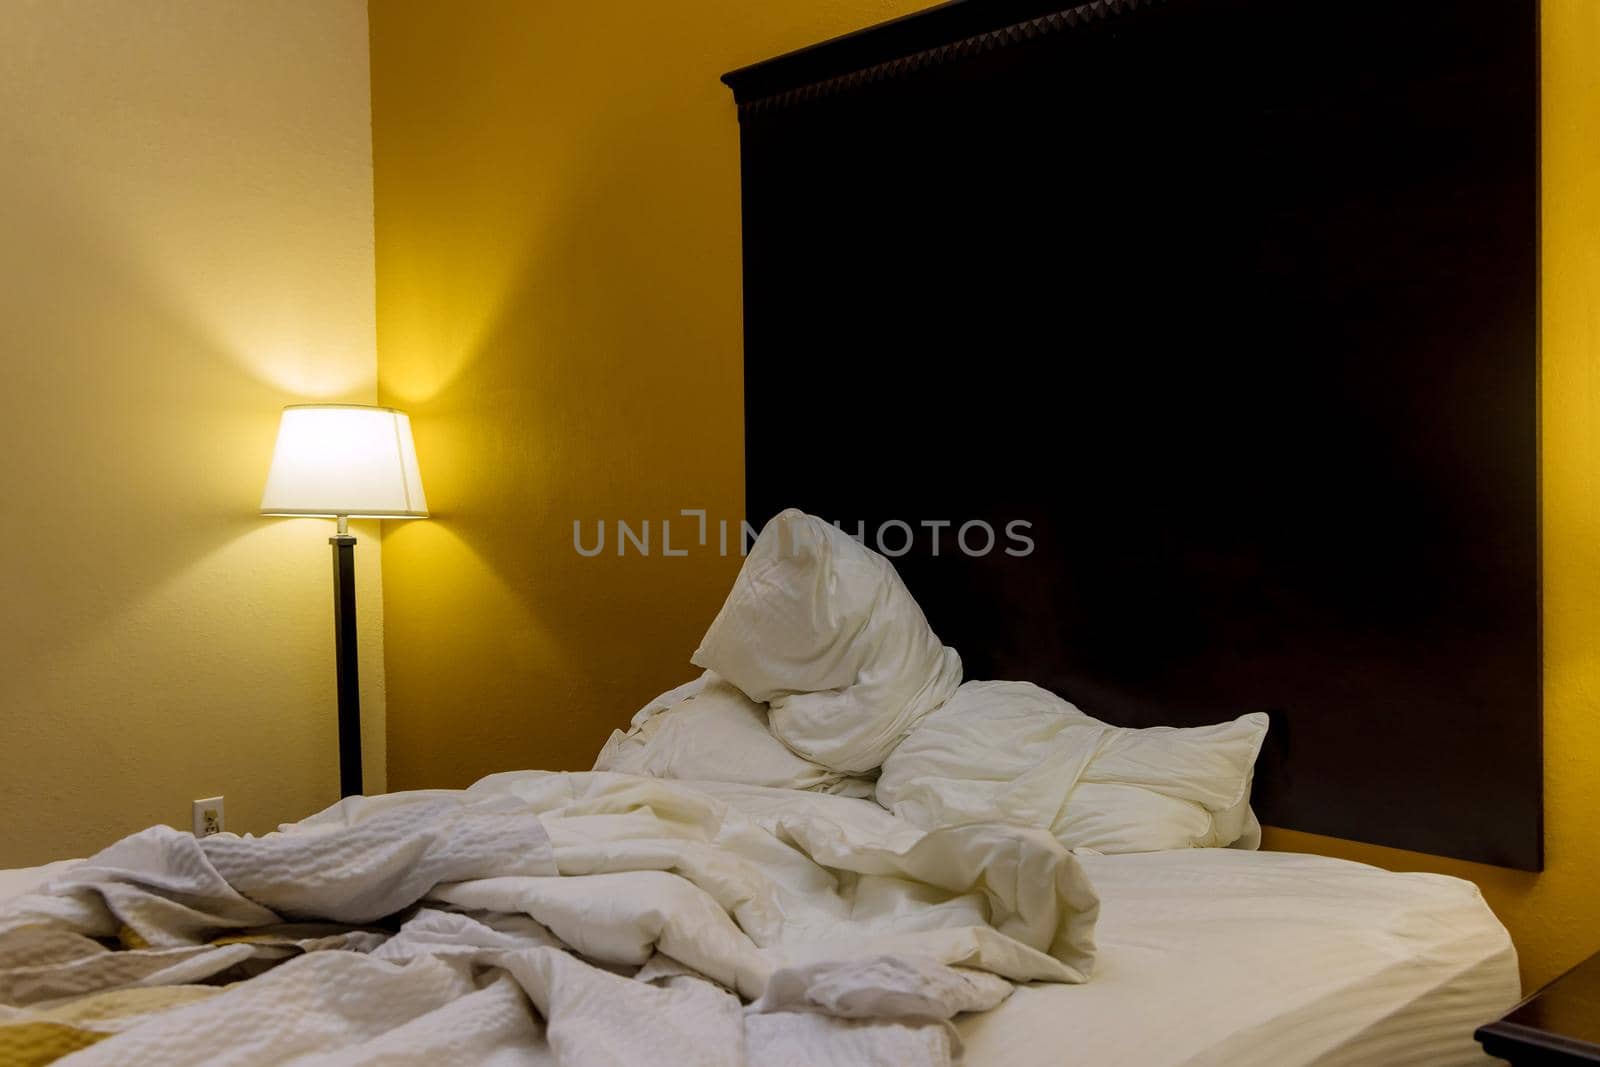 Comfort bedroom in hotel room with modern interior